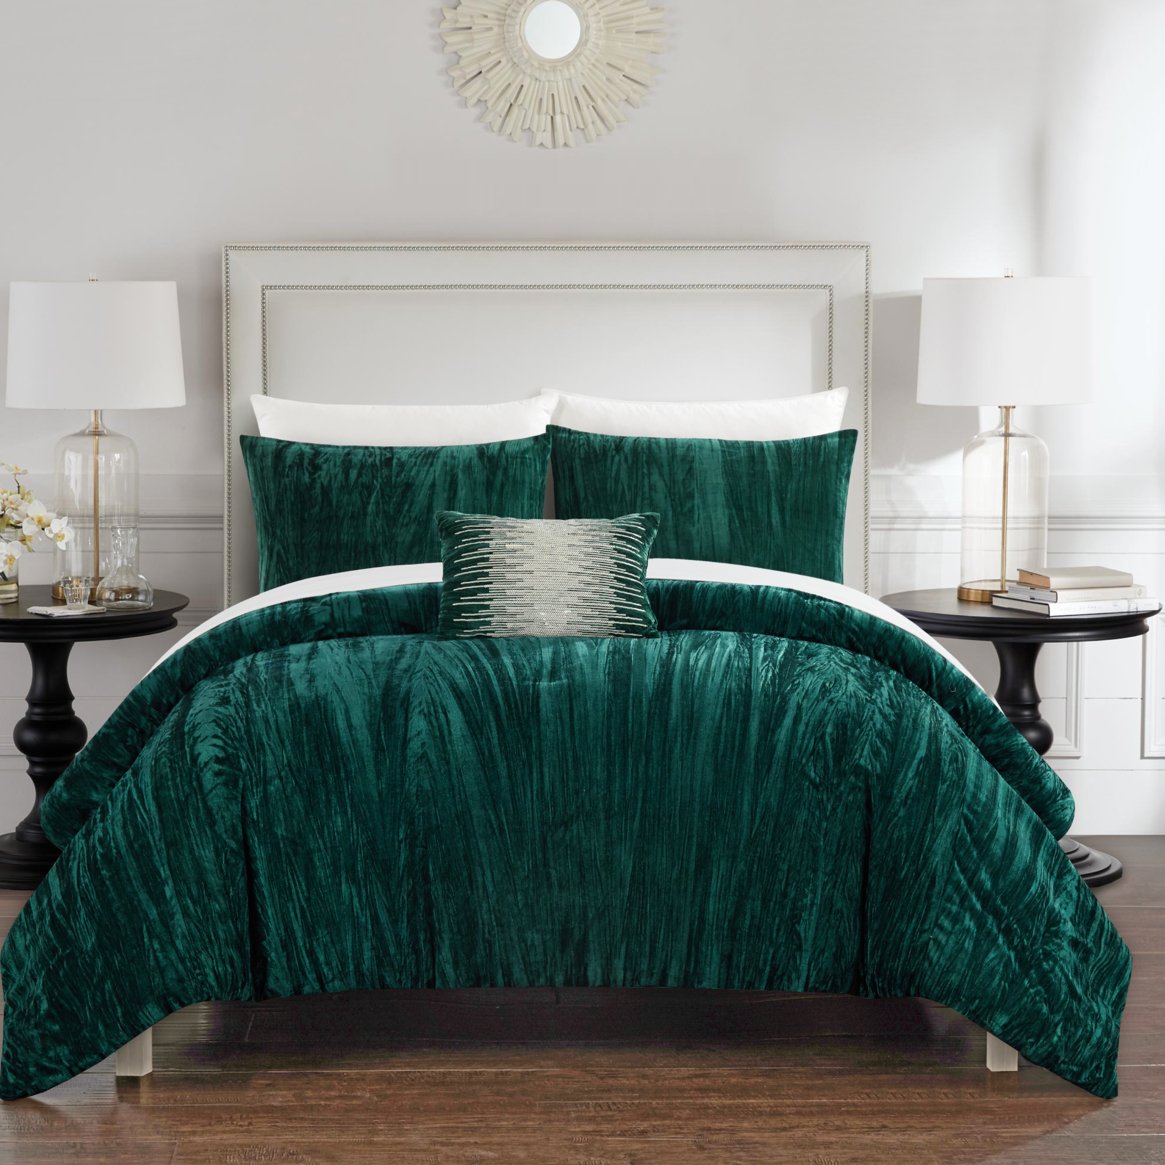 Merieta 8 Piece Comforter Set Crinkle Crushed Velvet Bed In A Bag Bedding - Navy, Queen